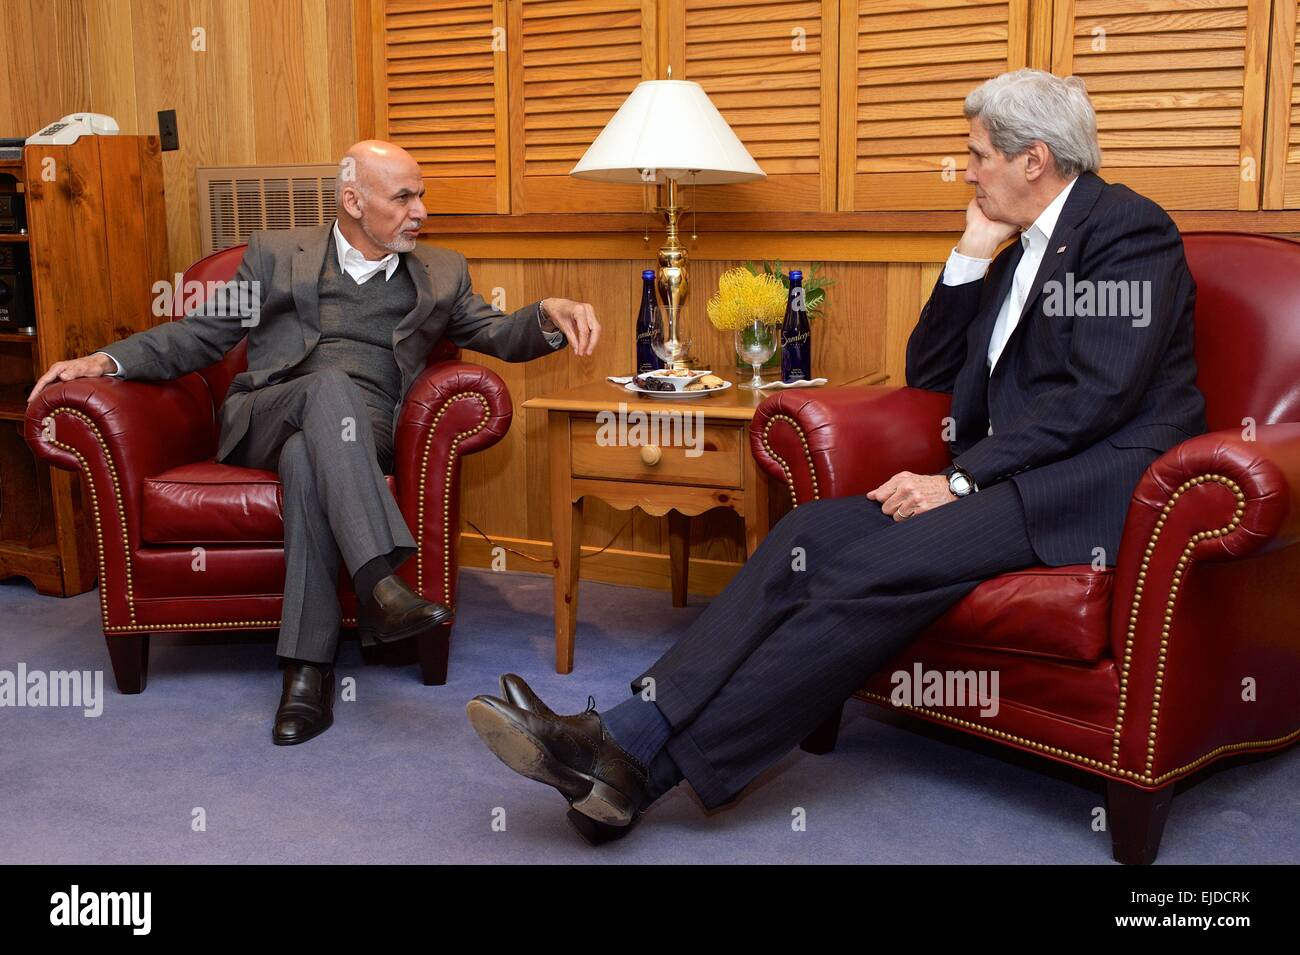 Le secrétaire d'Etat américain John Kerry rencontre le président américain au cours d'Ashraf Ghani-Afghan dialogues sur la sécurité, la liaison régionale et la transition économique dans la région de Holly Cabin à Camp David, le 23 mars 2015 à Thurmont, Maryland. Banque D'Images